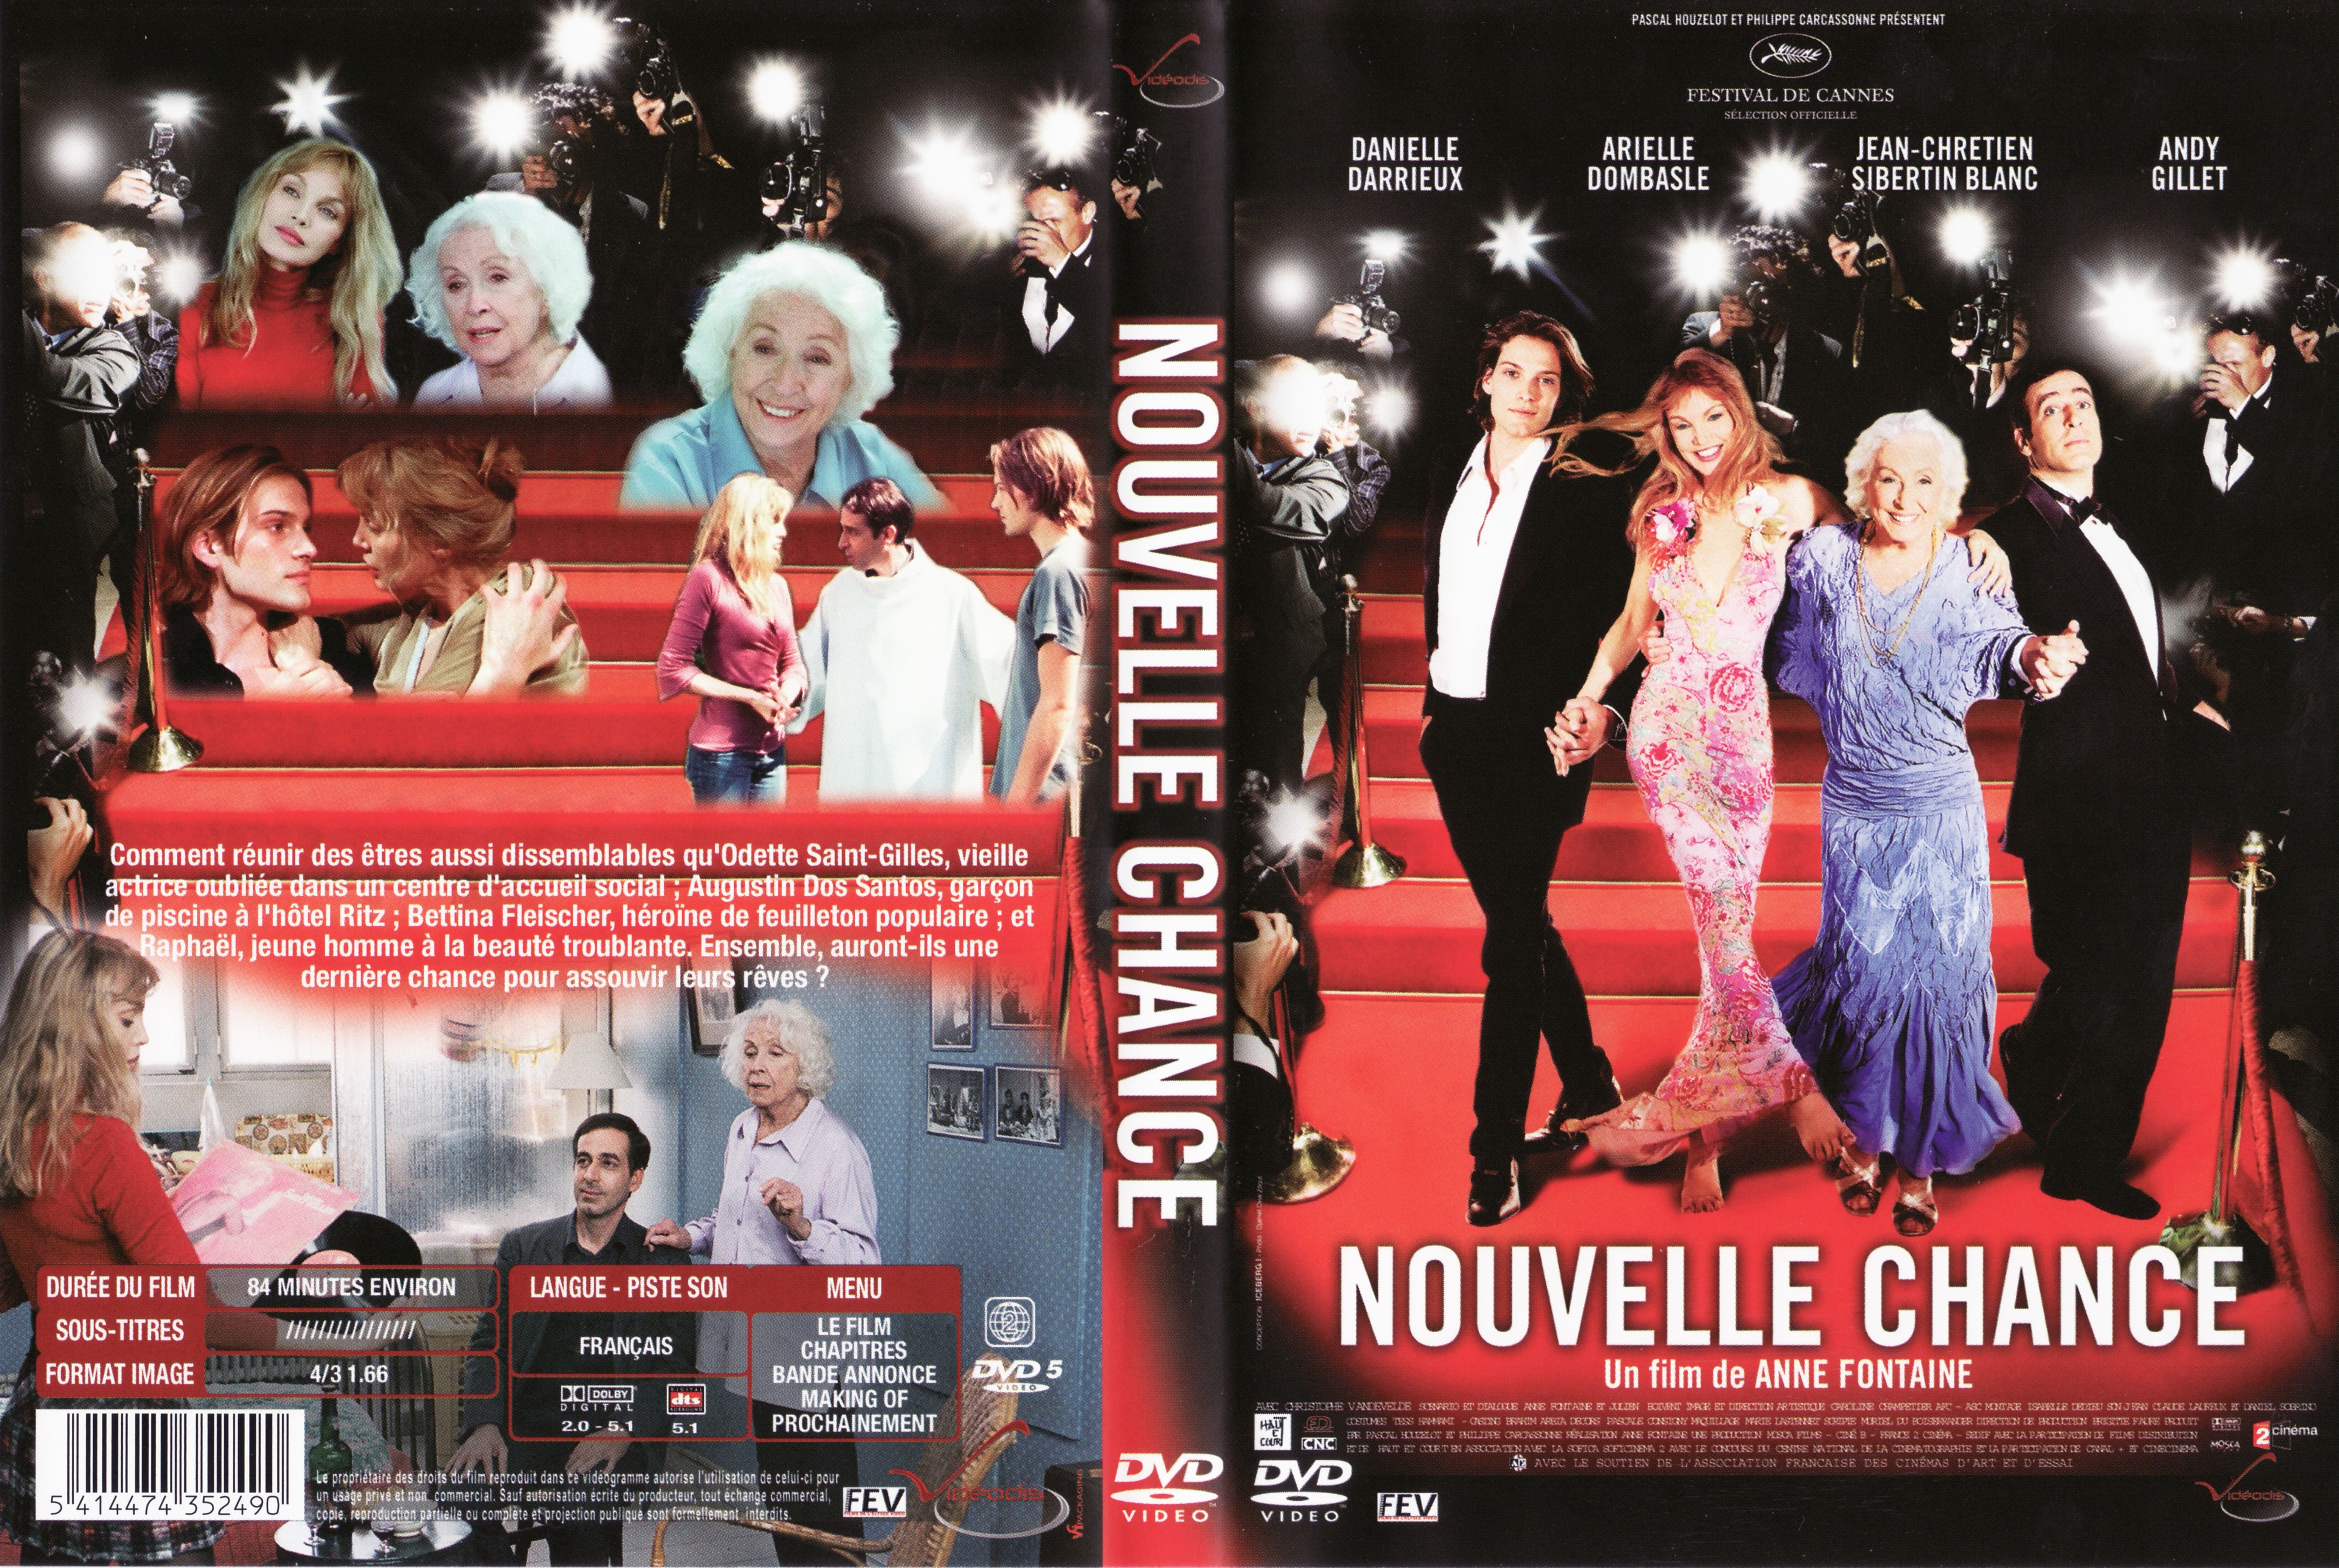 Jaquette DVD Nouvelle chance